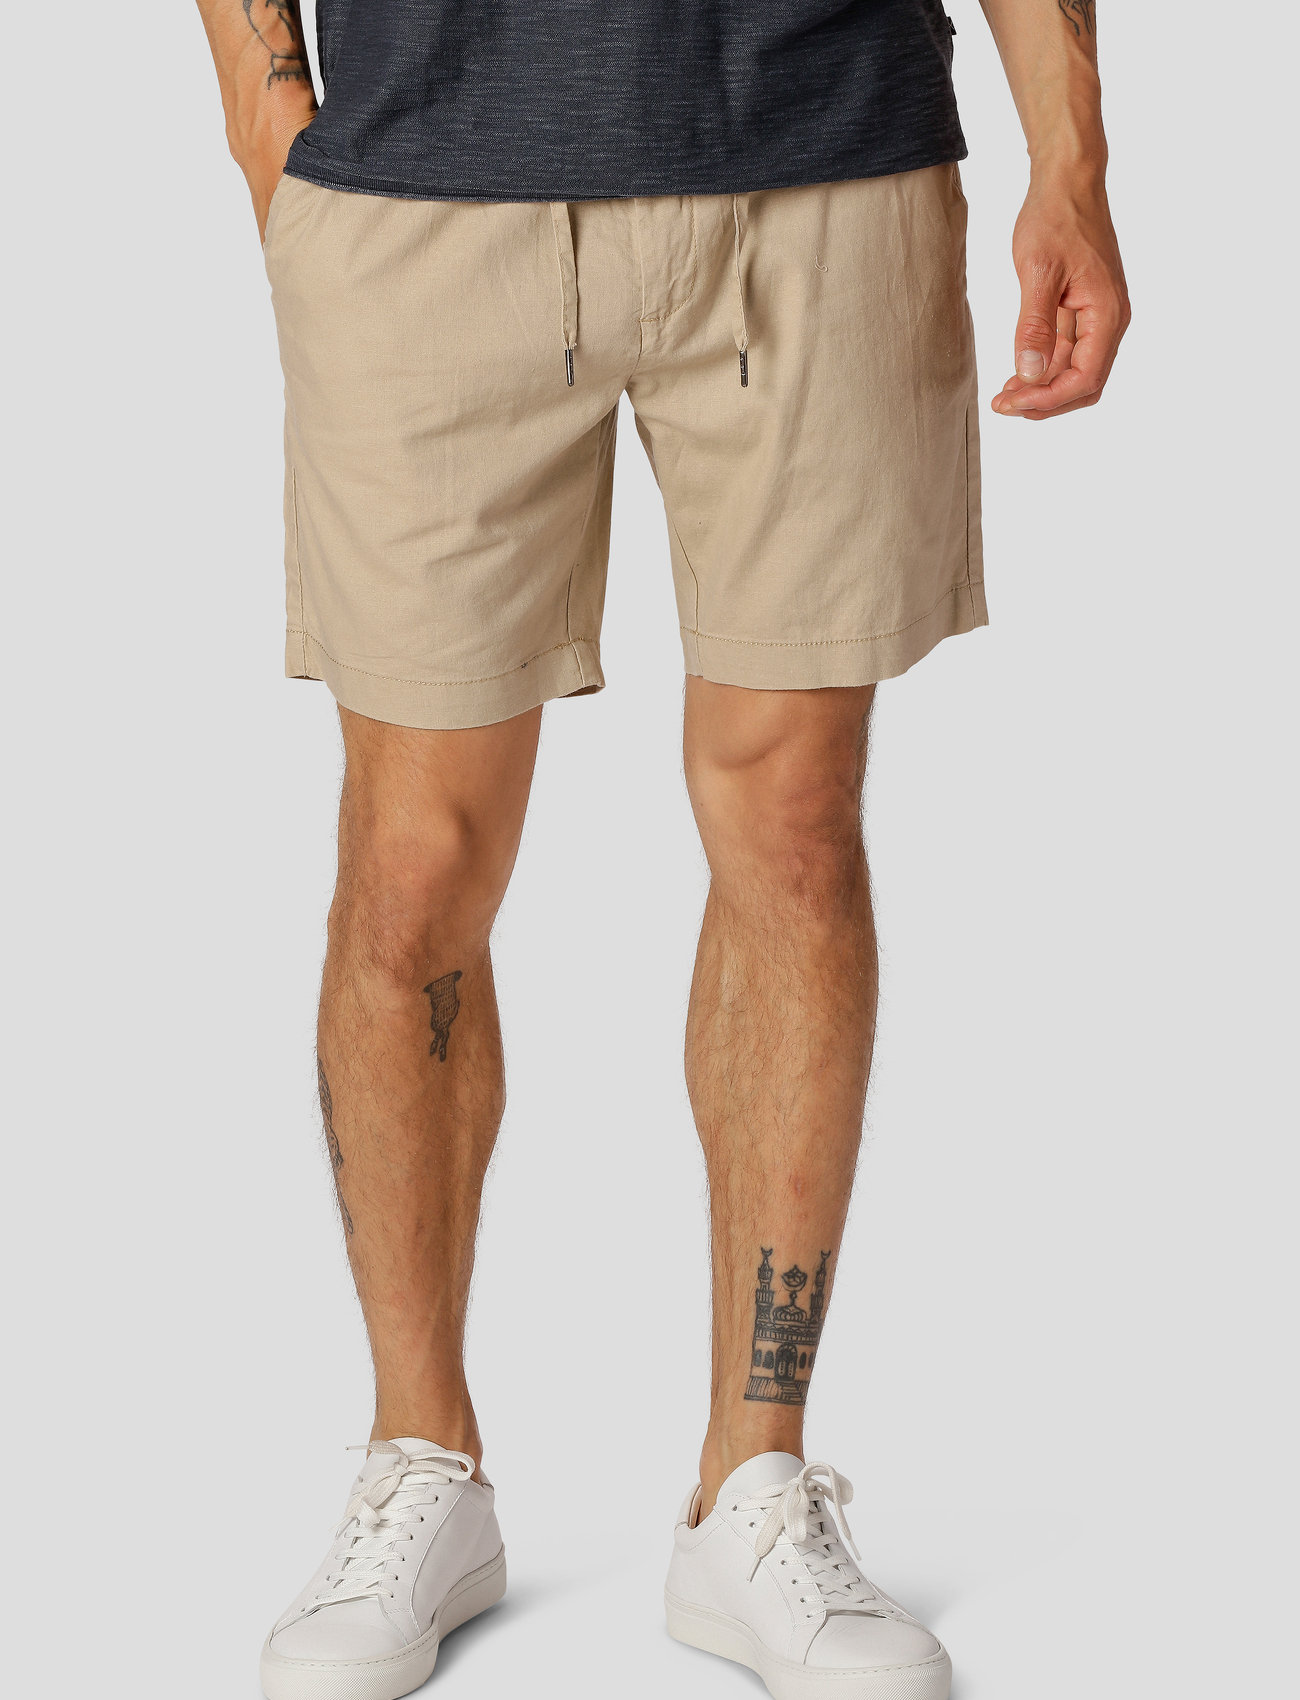 Clean Cut Copenhagen - Barcelona Cotton / Linen Shorts - linnen shorts - khaki - 0